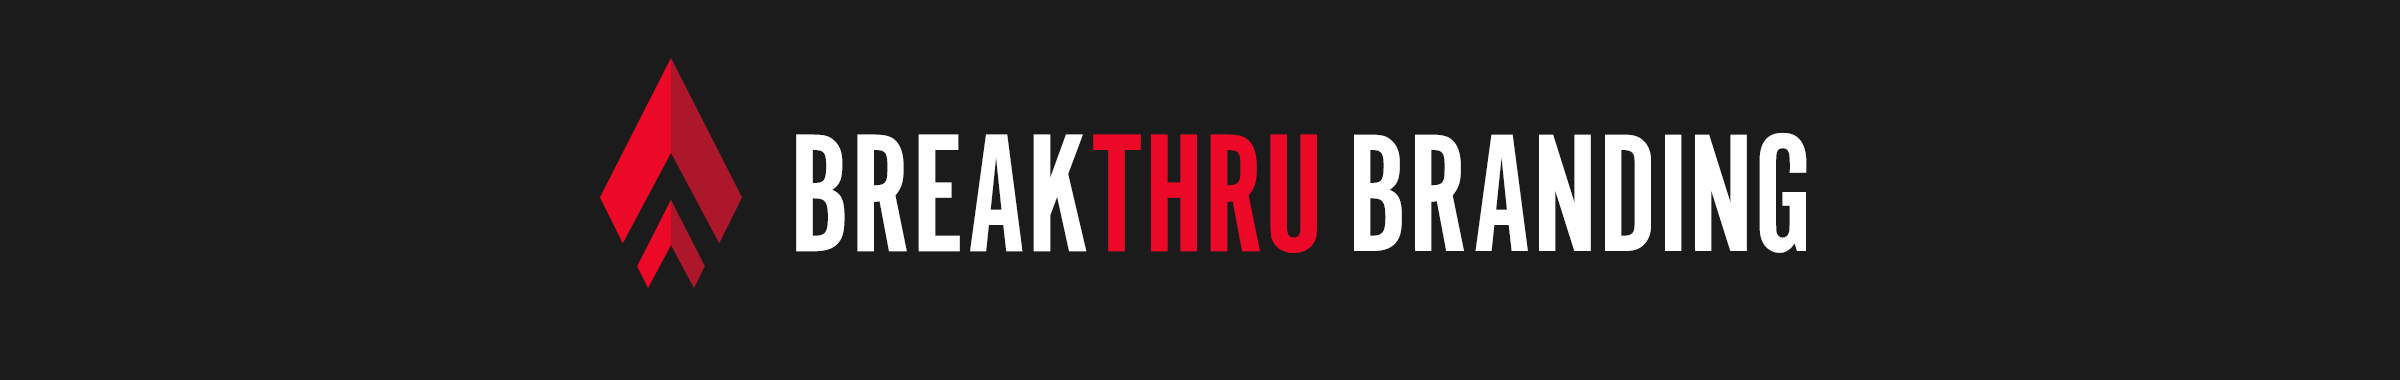 Breakthru Branding Logo